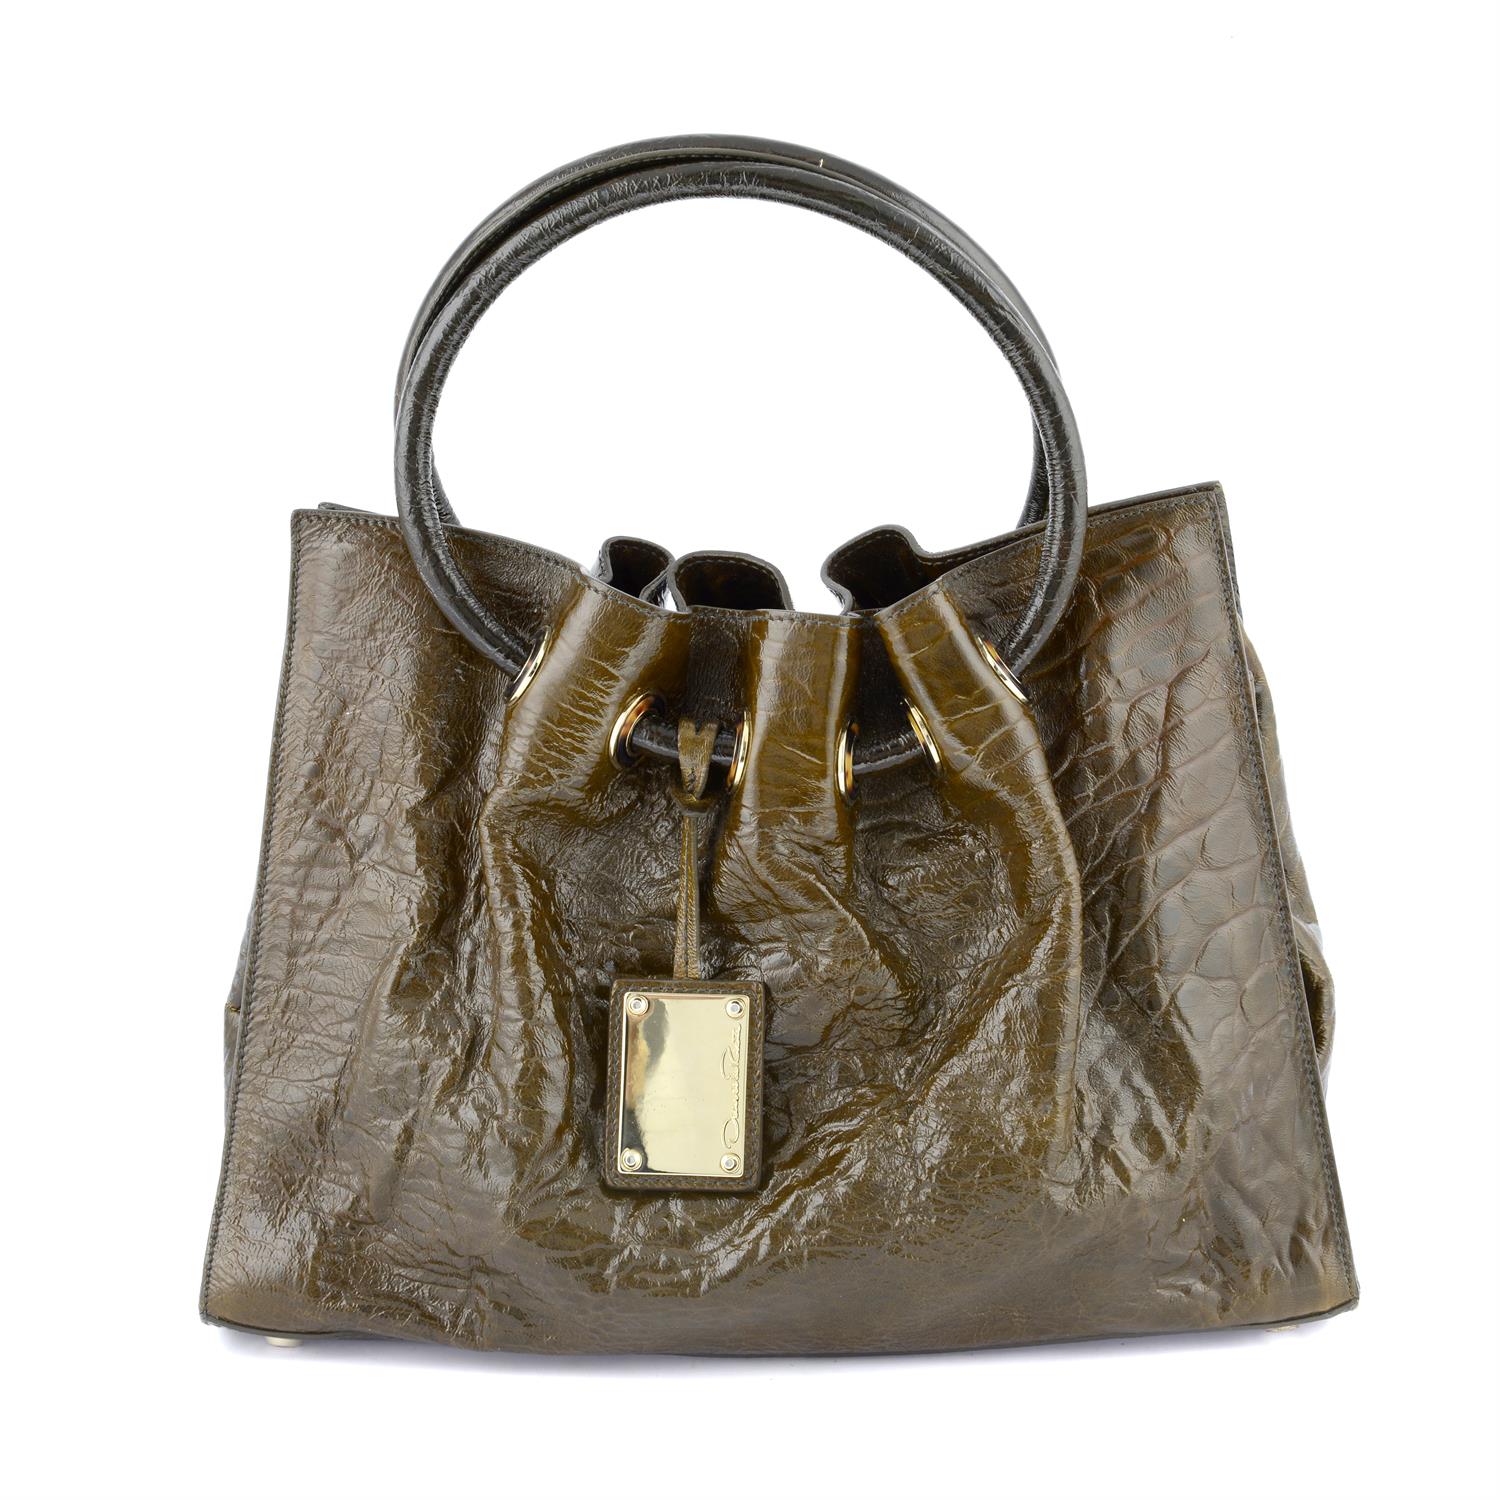 OSCAR DE LA RENTA - a brown patent leather handbag.